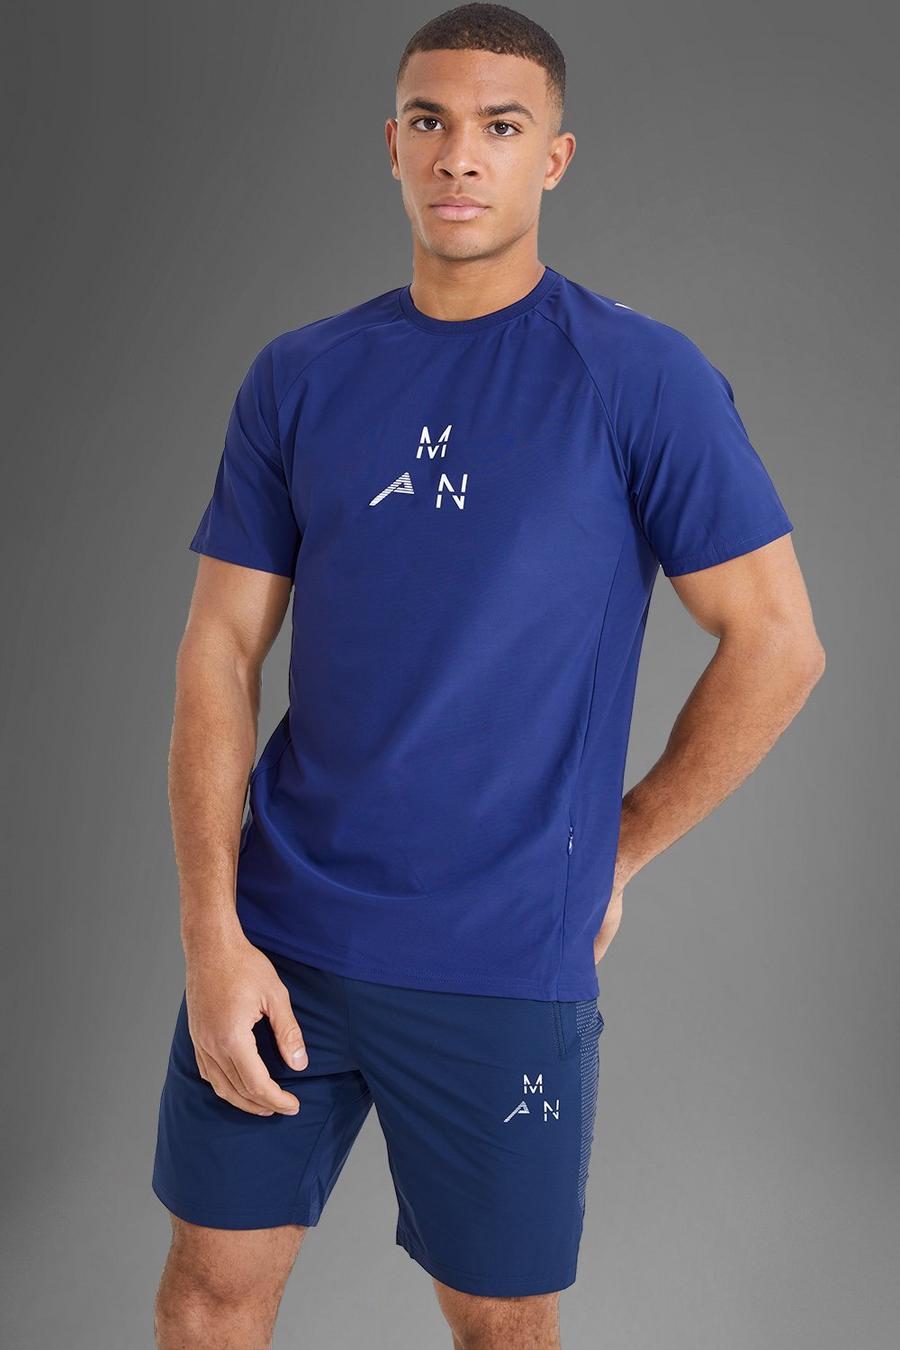 T-shirt Man Active Gym con logo riflettente, Navy azul marino